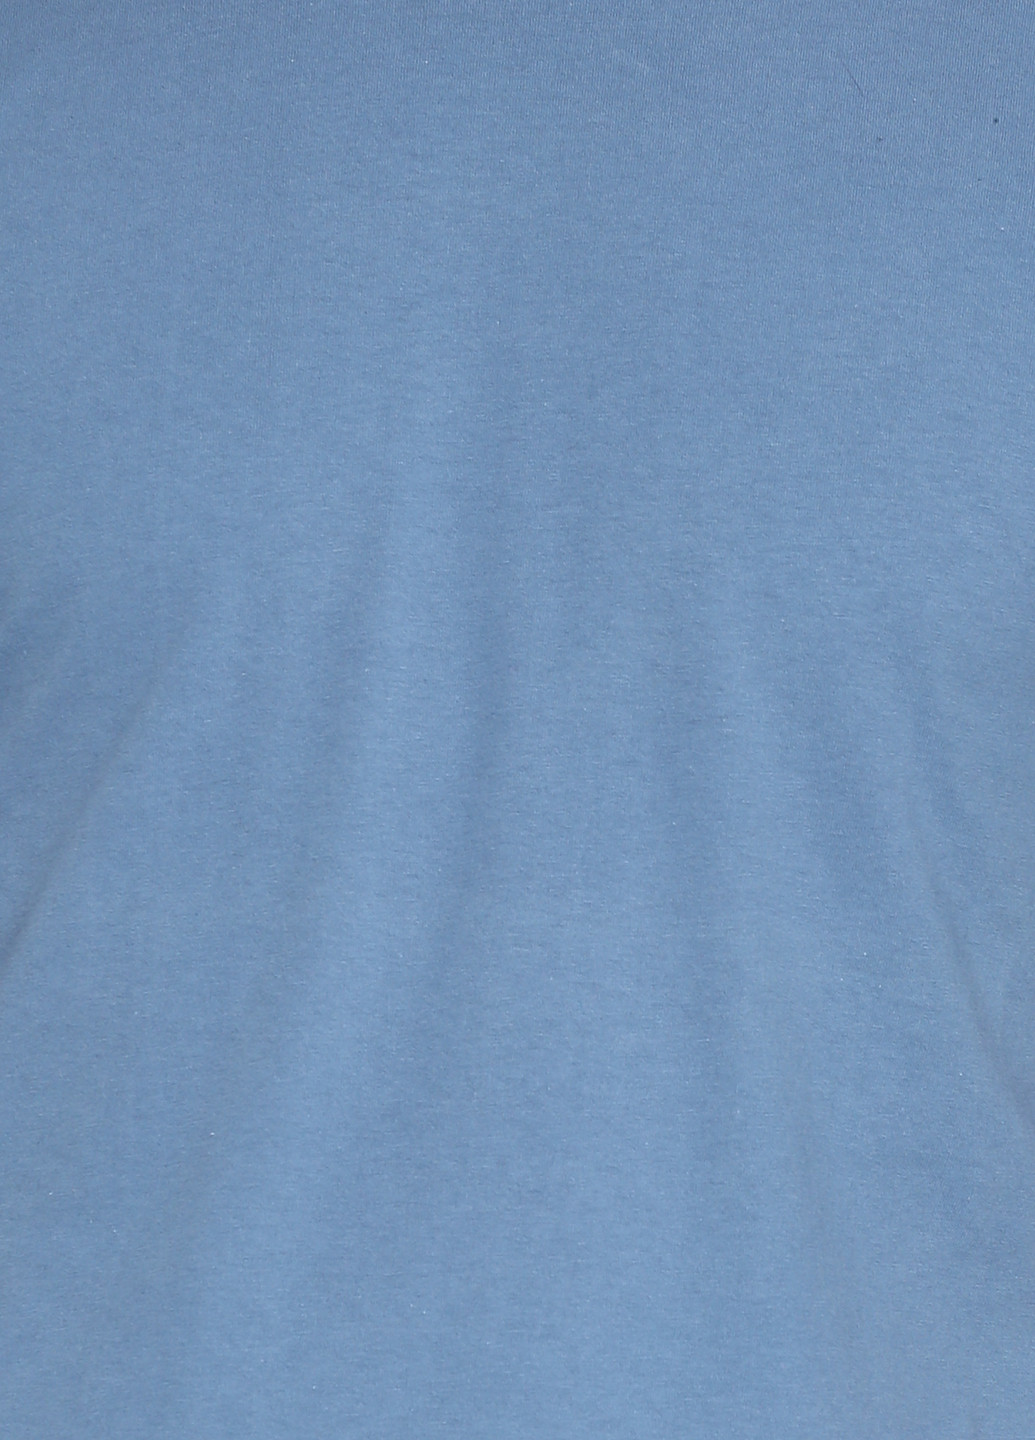 Серо-голубая футболка Centrix